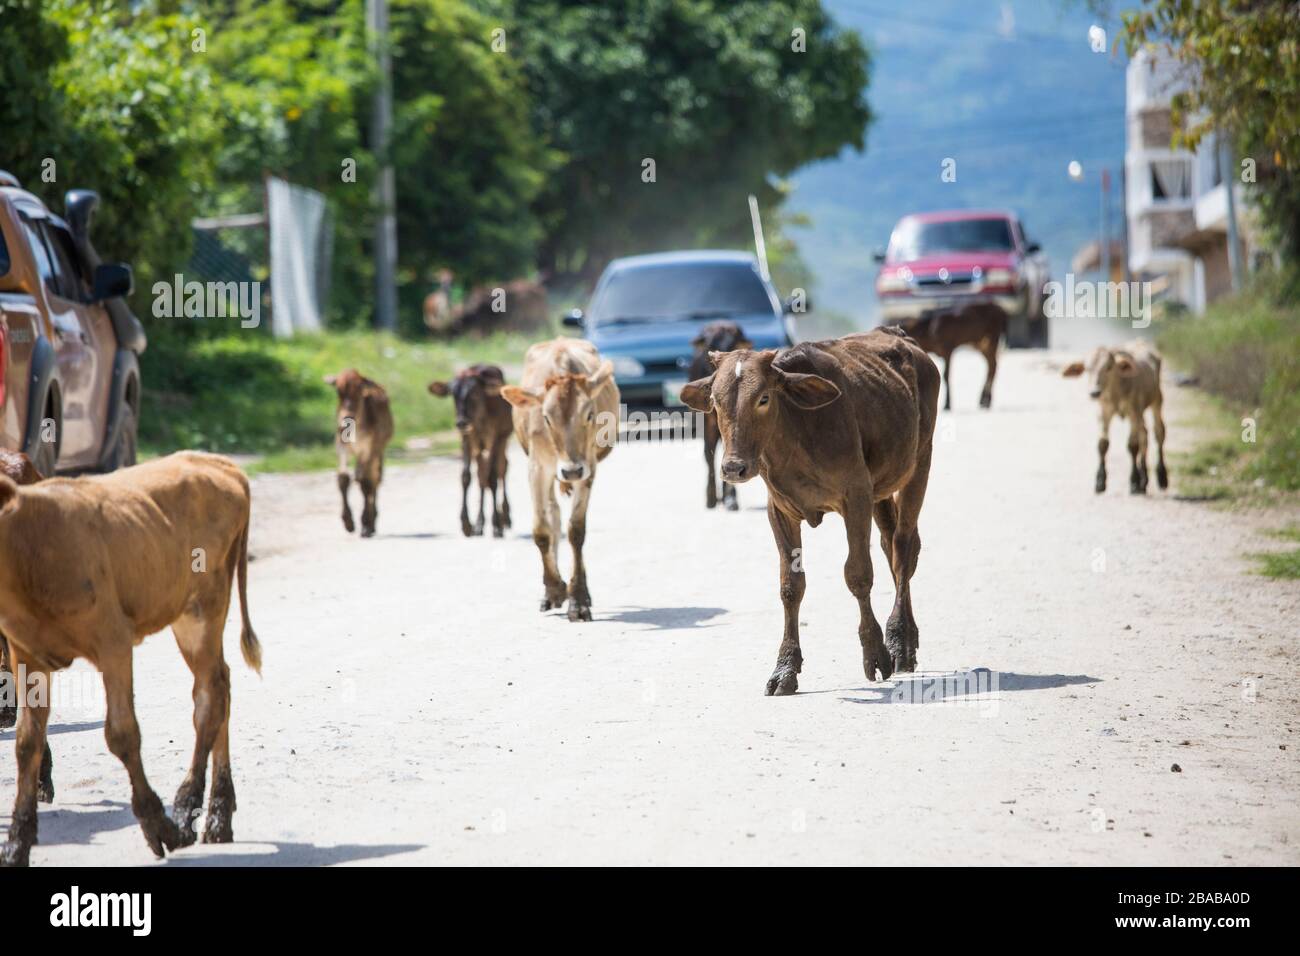 Las vacas vagan por la carretera, bloqueando el tráfico. Foto de stock